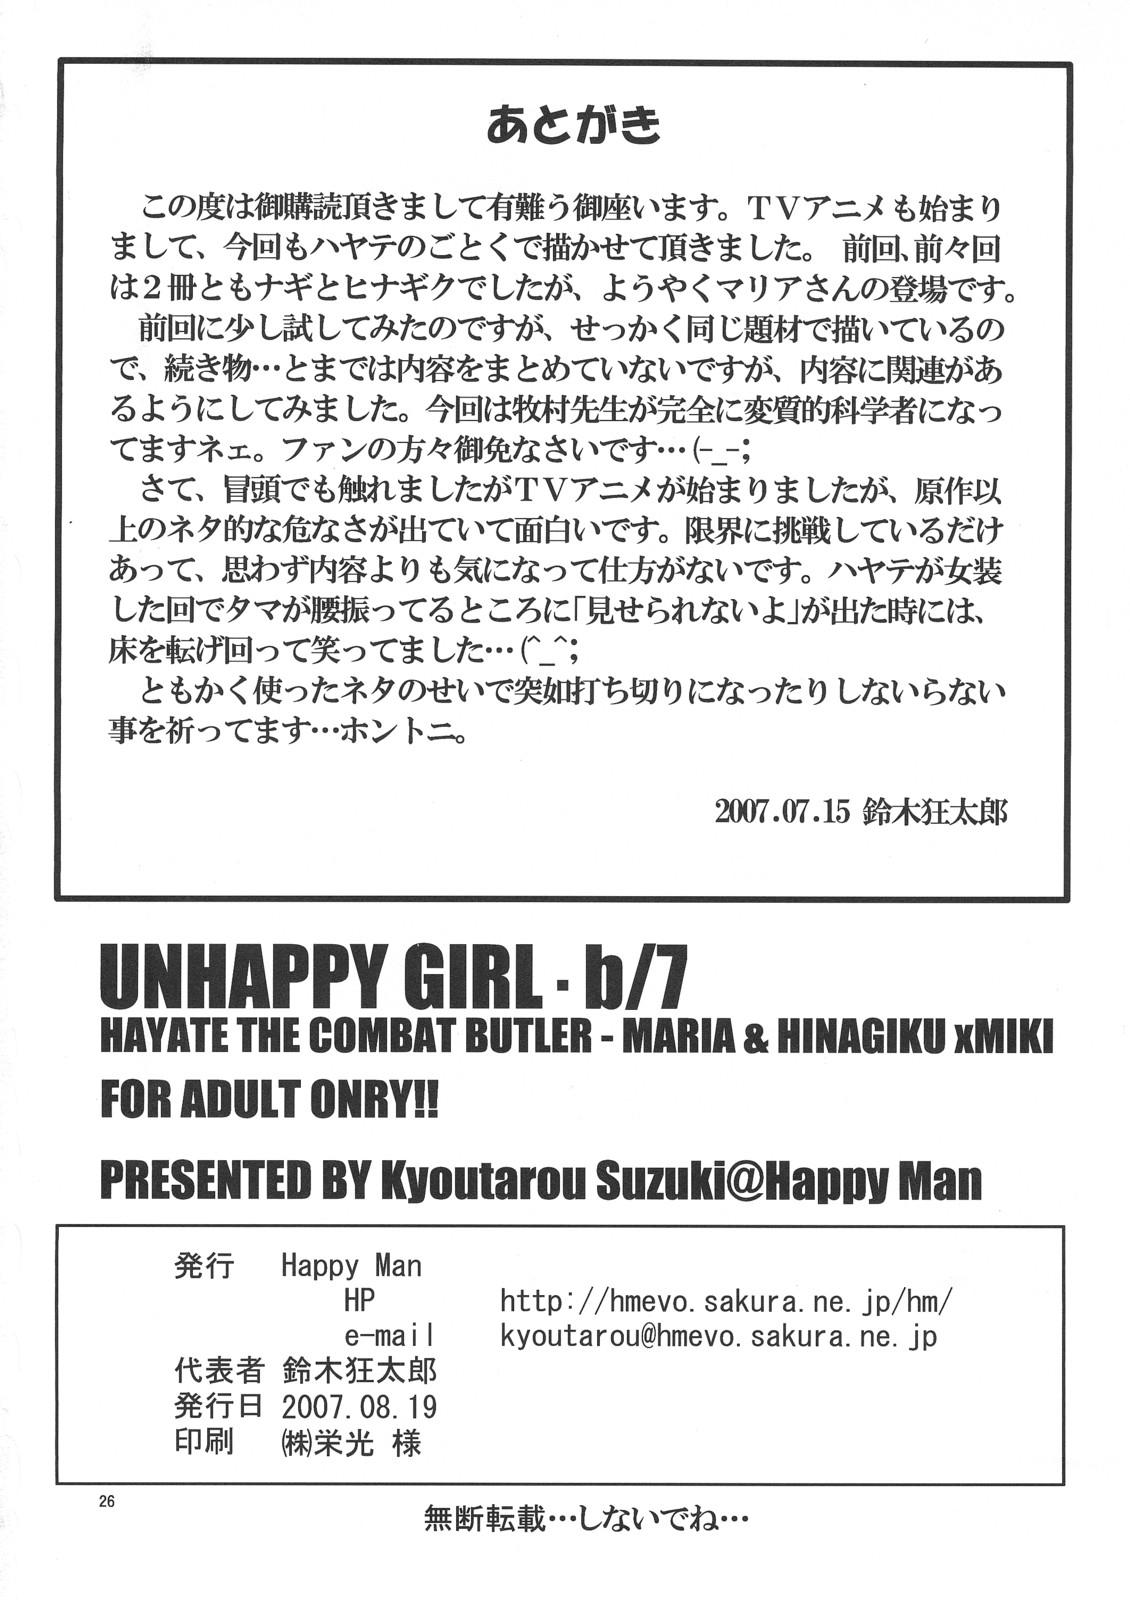 Unhappy Girl b/7 24